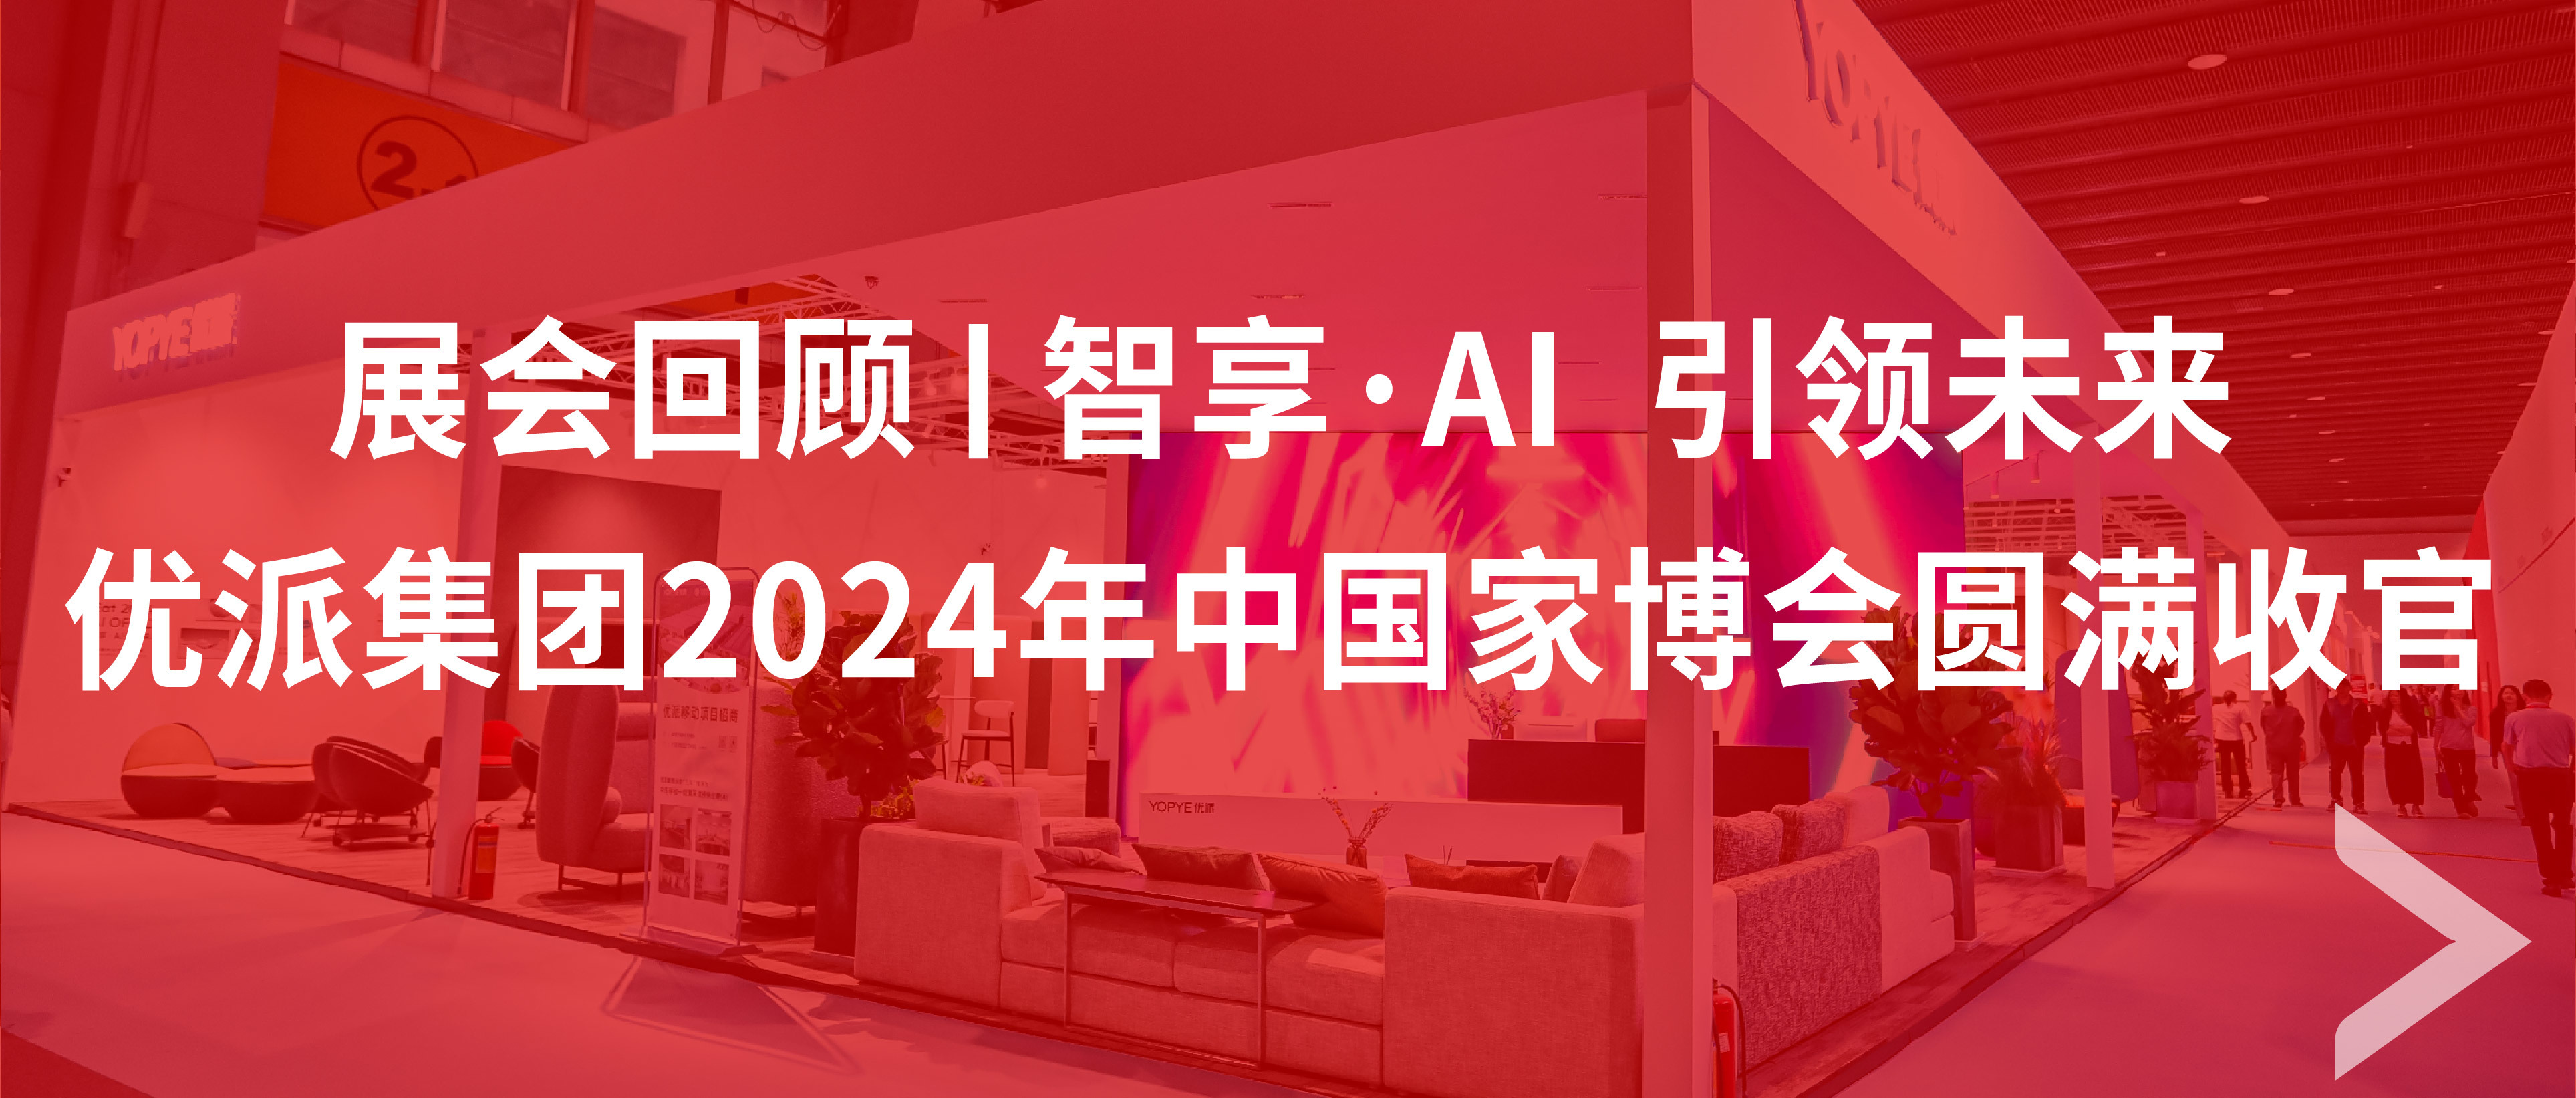 展会回顾 | 智享·AI 引领未来 9170在线登录金沙集团2024年中国家博会圆满收官